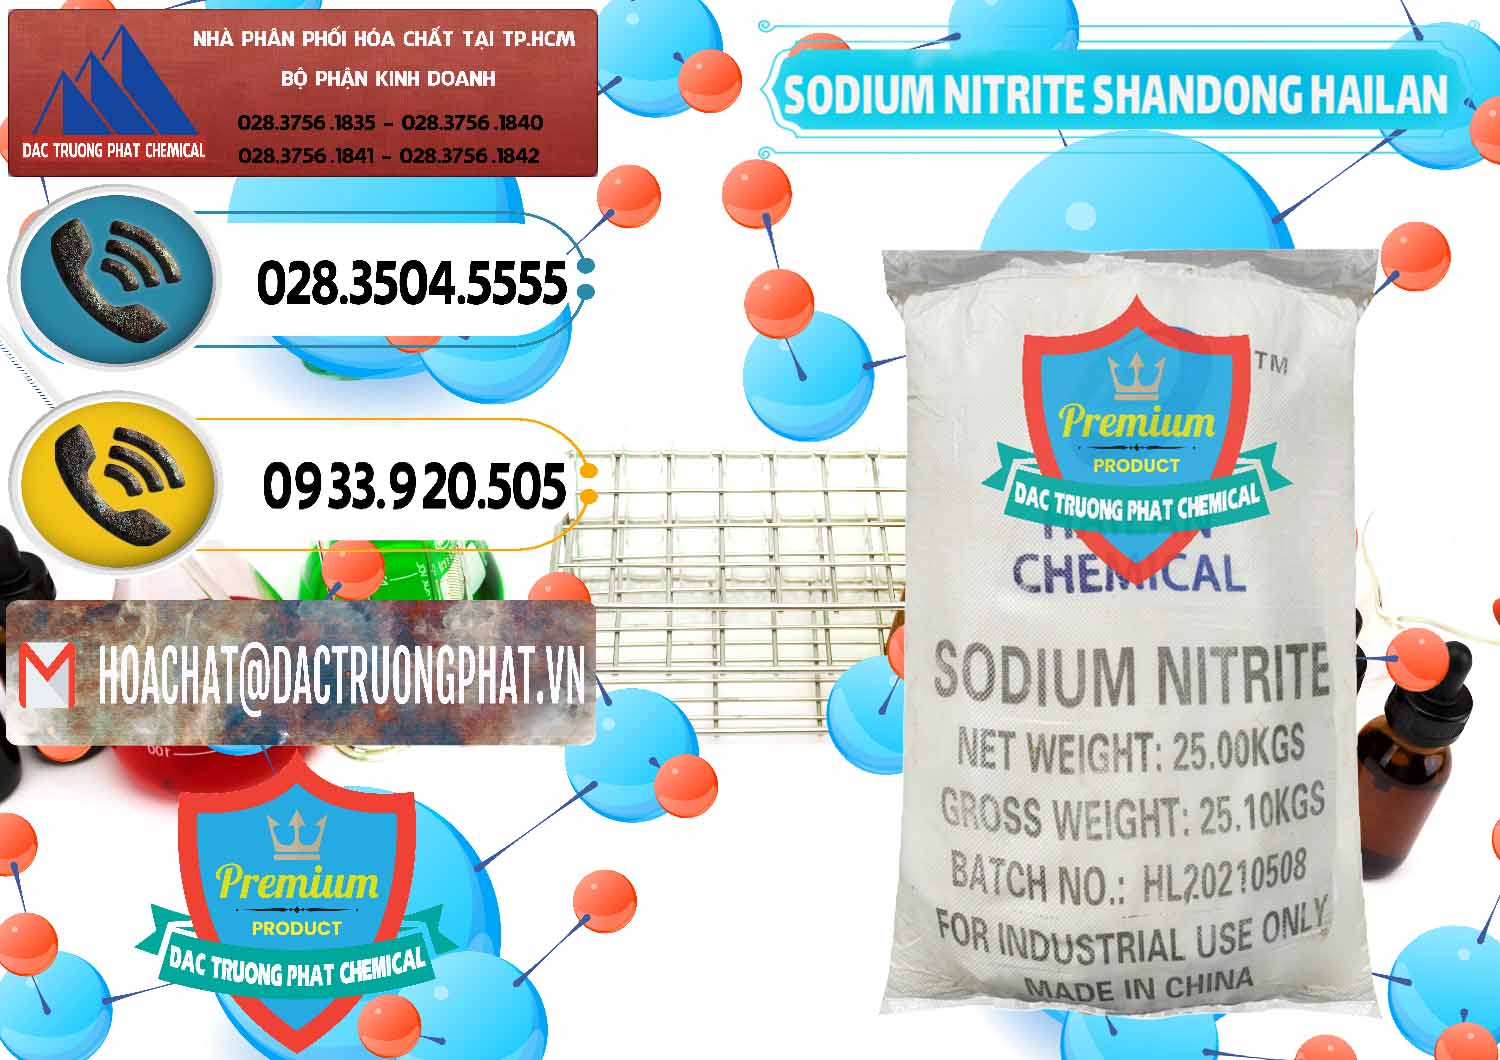 Chuyên nhập khẩu _ bán Sodium Nitrite - NANO2 99.3% Shandong Hailan Trung Quốc China - 0284 - Chuyên cung cấp & kinh doanh hóa chất tại TP.HCM - hoachatdetnhuom.vn